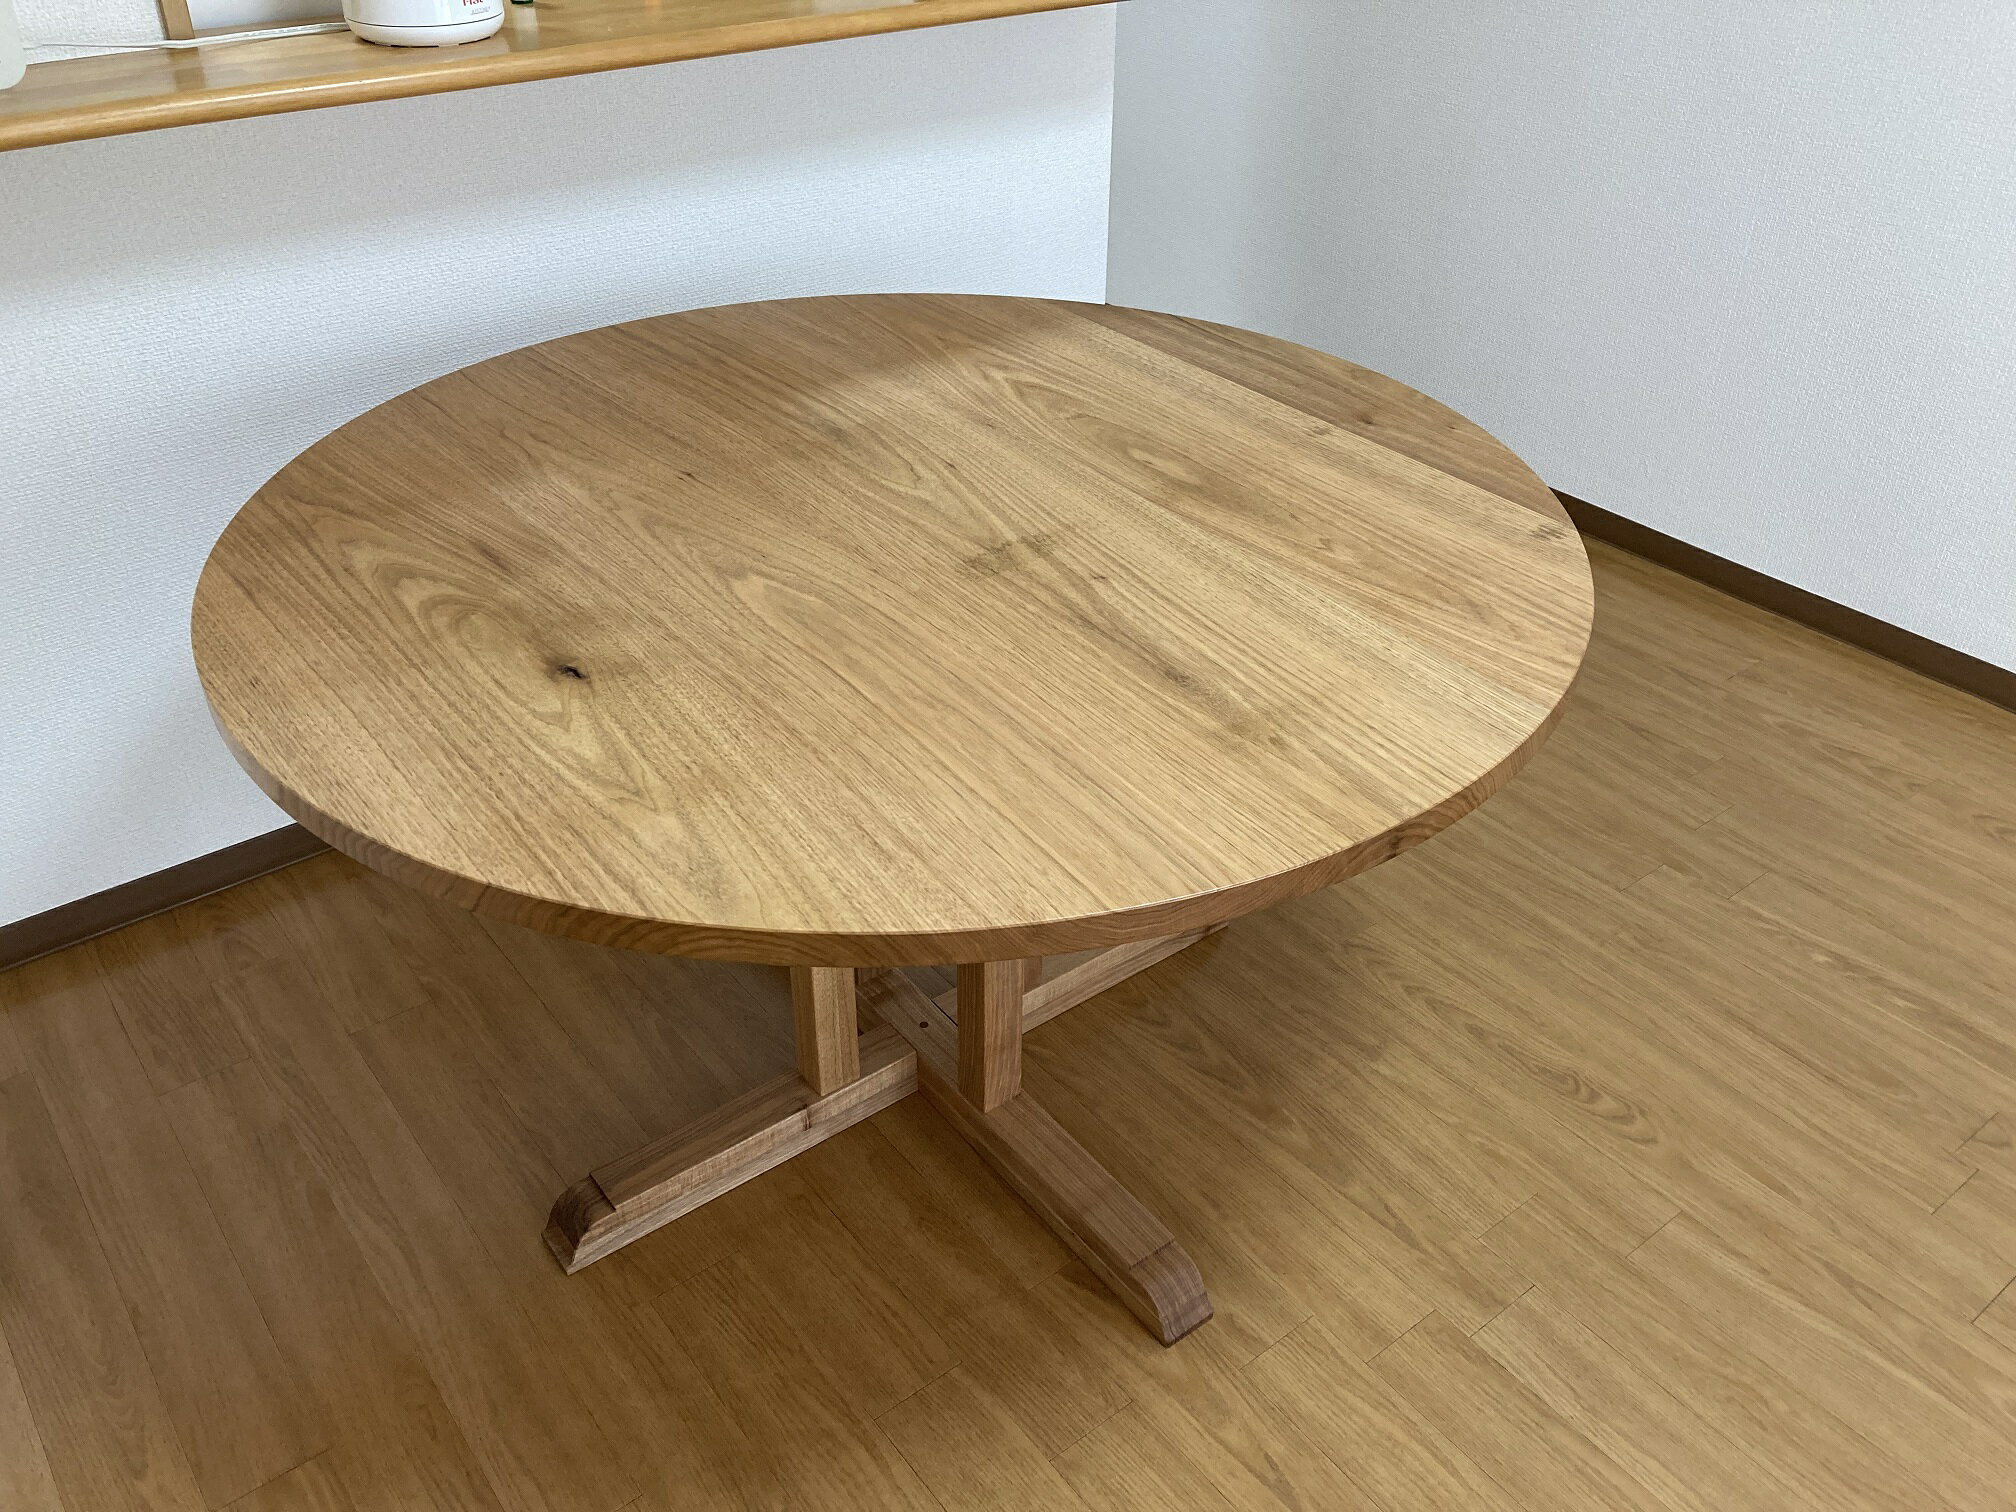 【ふるさと納税】使いやすく丸い木製のダイニングテーブル「胡桃の円卓」120